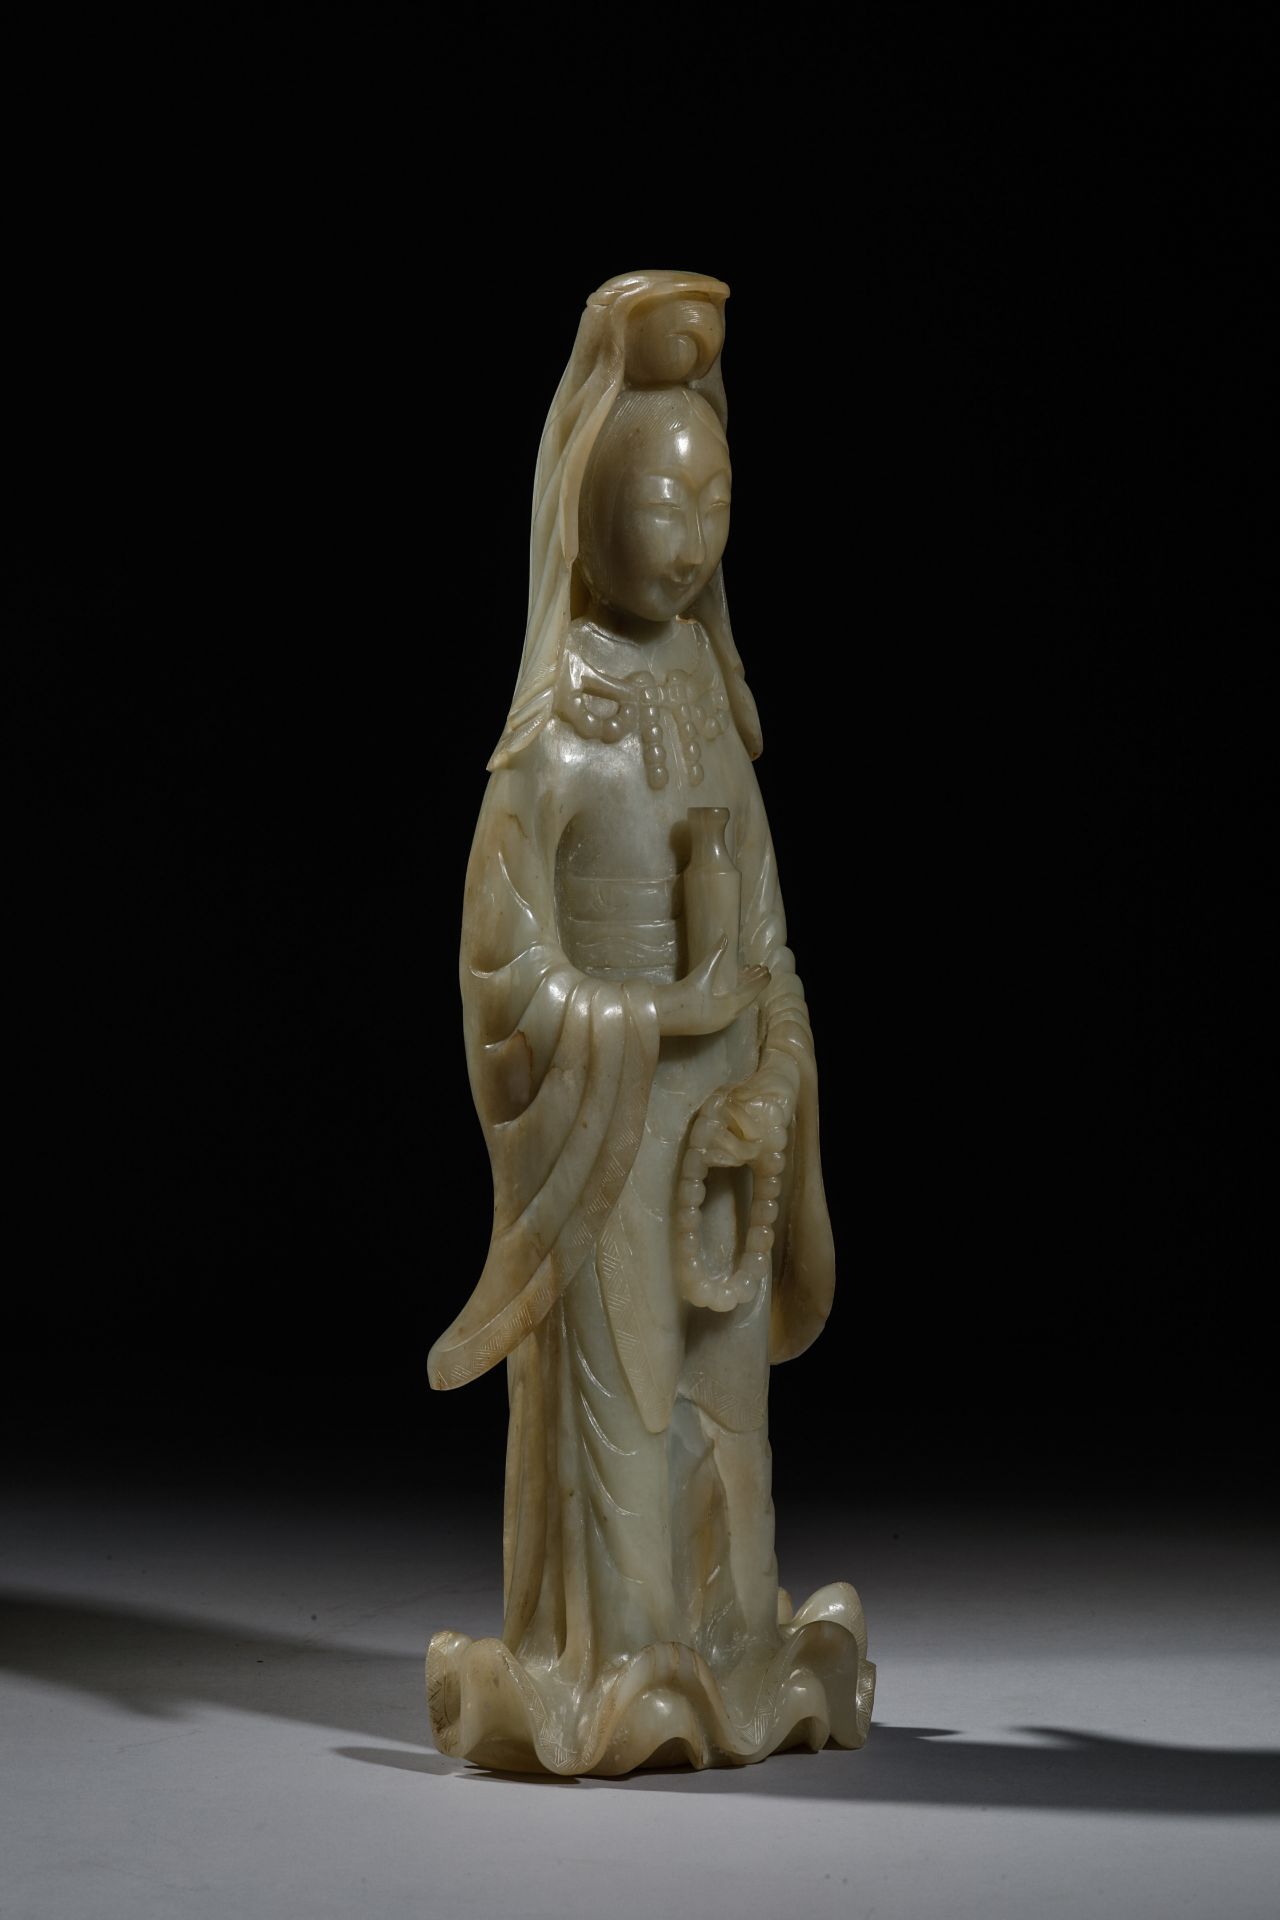 Le Boddhisattva « Kwan yin » debout vêtu d’une robe drapé à large manches et plis bouillonnants - Bild 2 aus 5